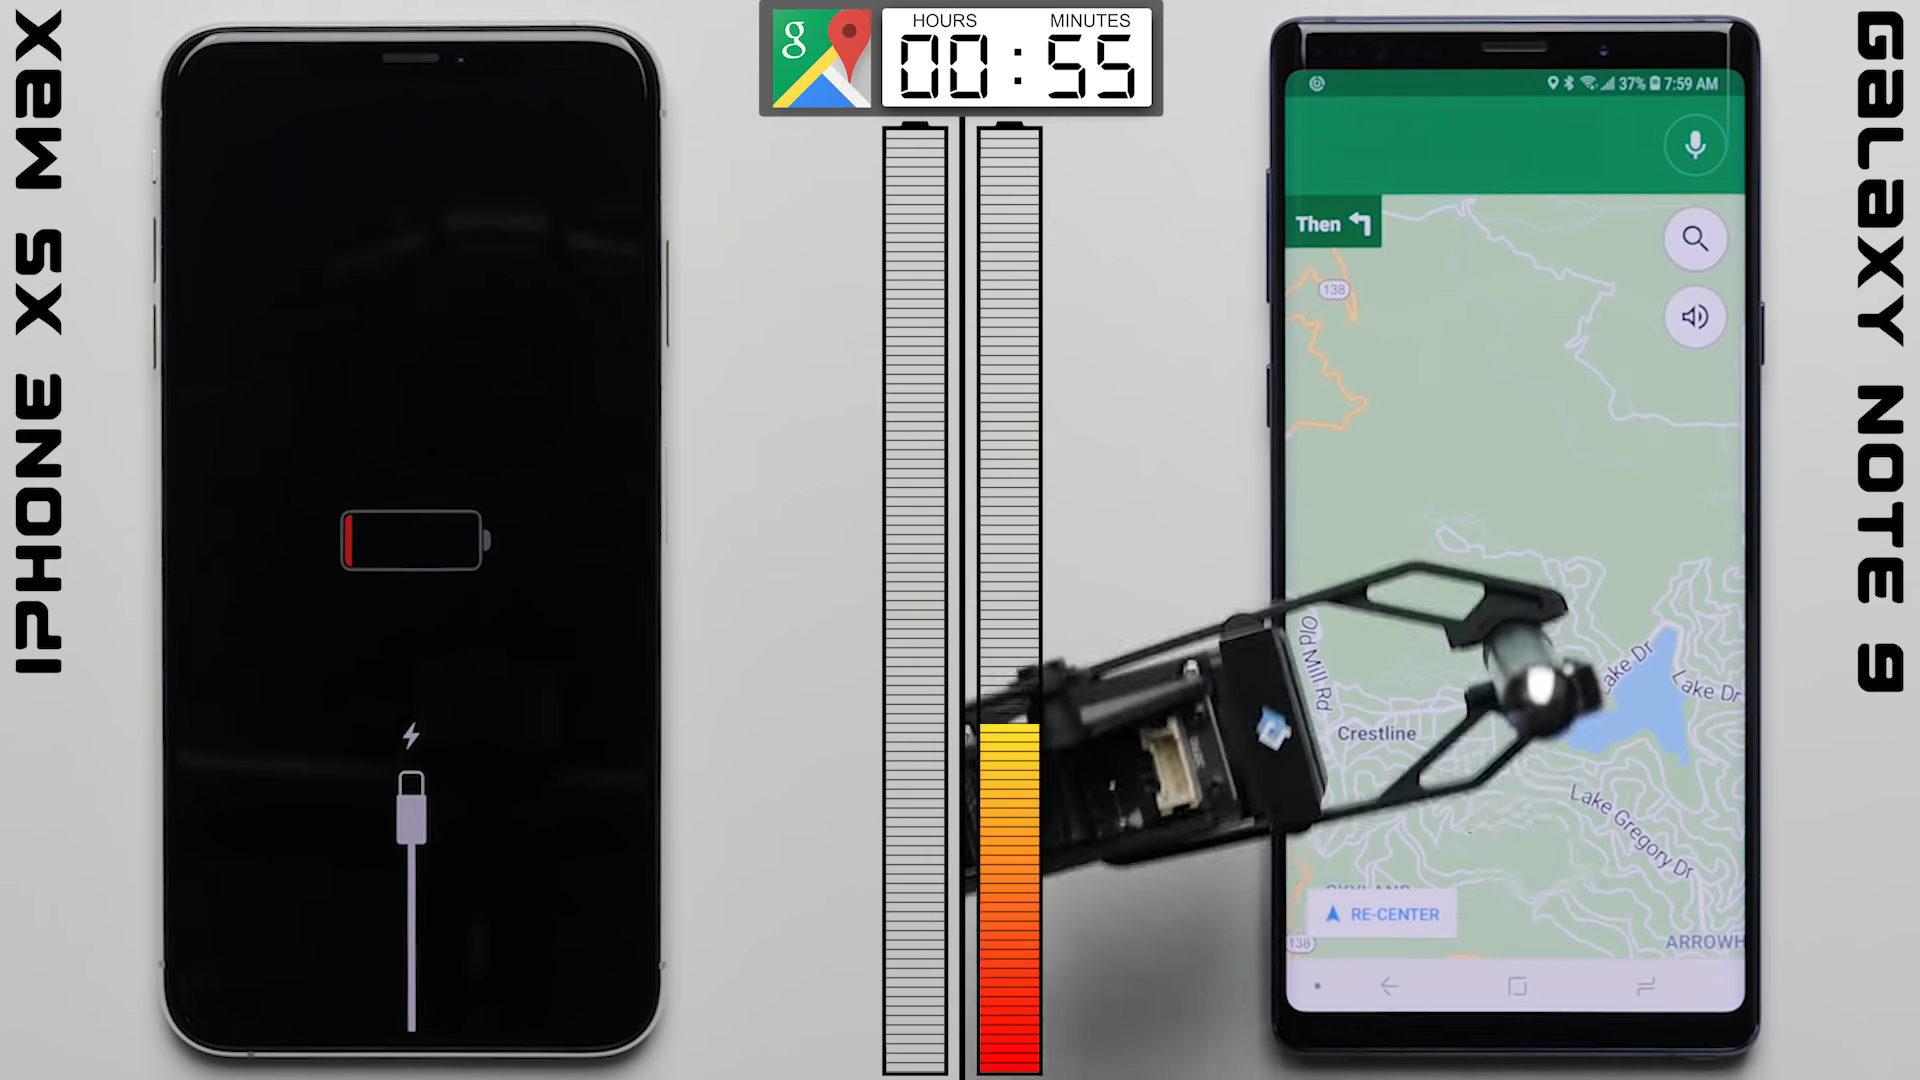 So sánh thời lượng pin iPhone XS Max với Galaxy
Note 9: Liệu iPhone XS Max có chiến thắng được viên pin 4000
mAh trên Note 9